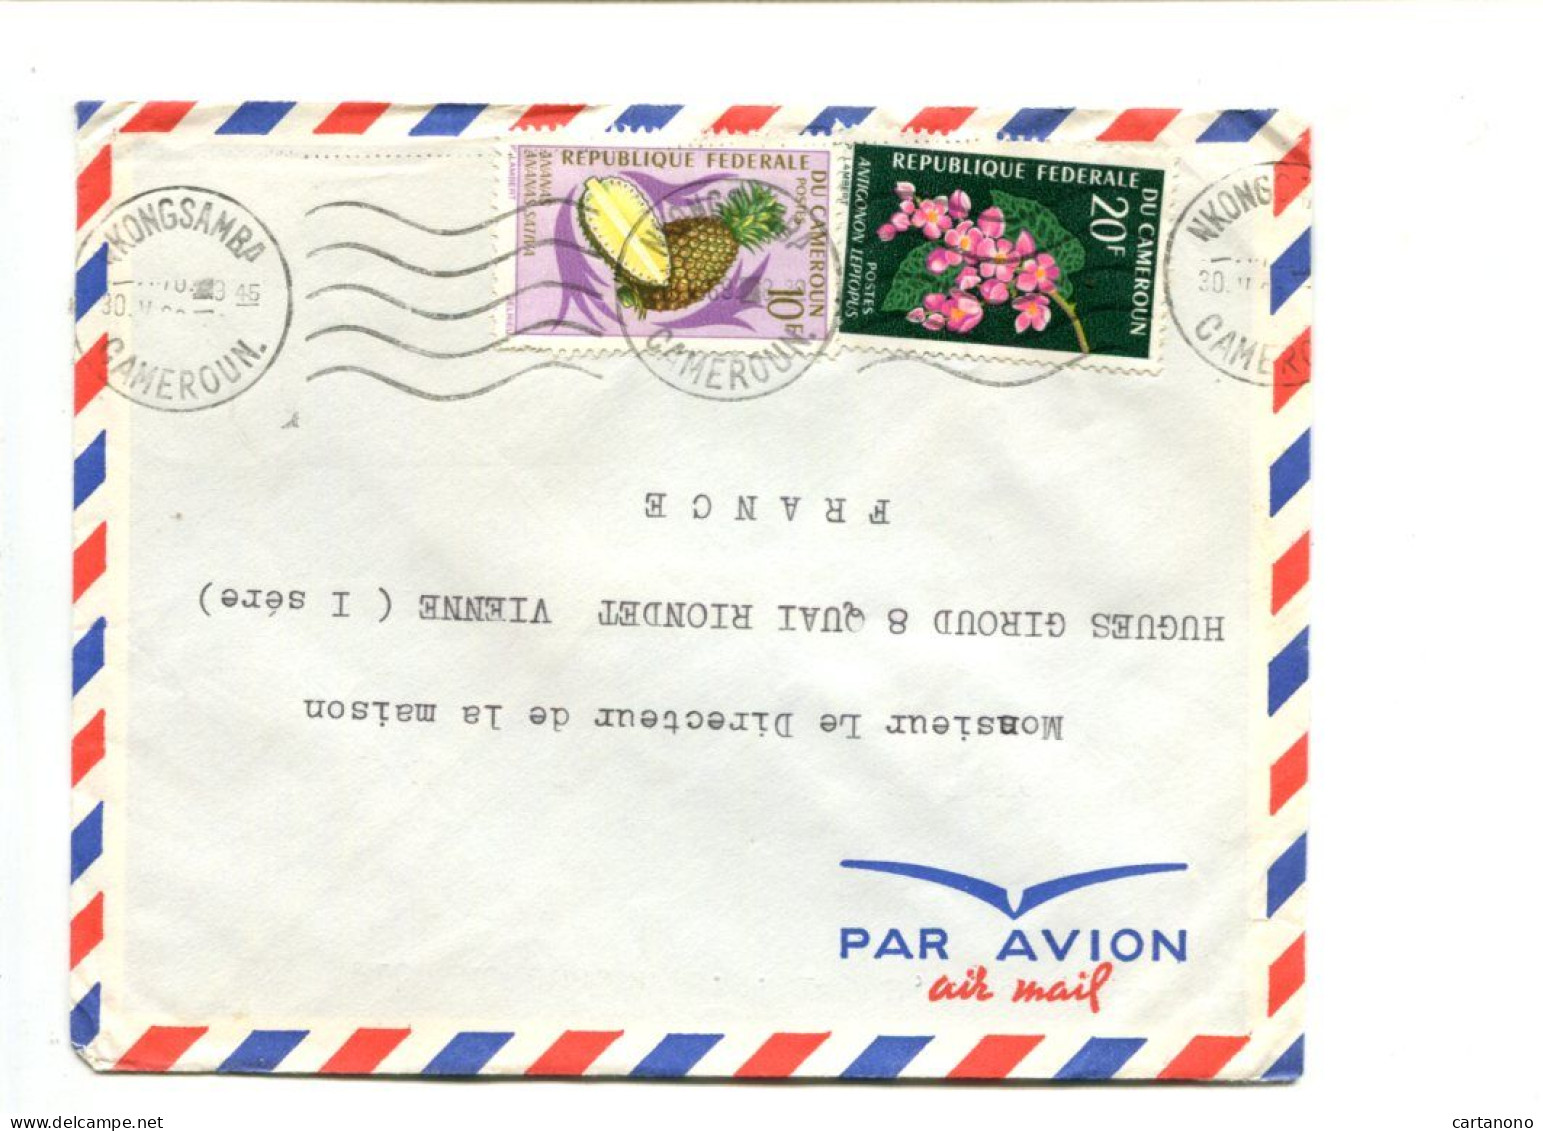 CAMEROUN - Affranchissement Sur Lettre Par Avion - Fleurs / Fruits Ananas - Cameroun (1960-...)